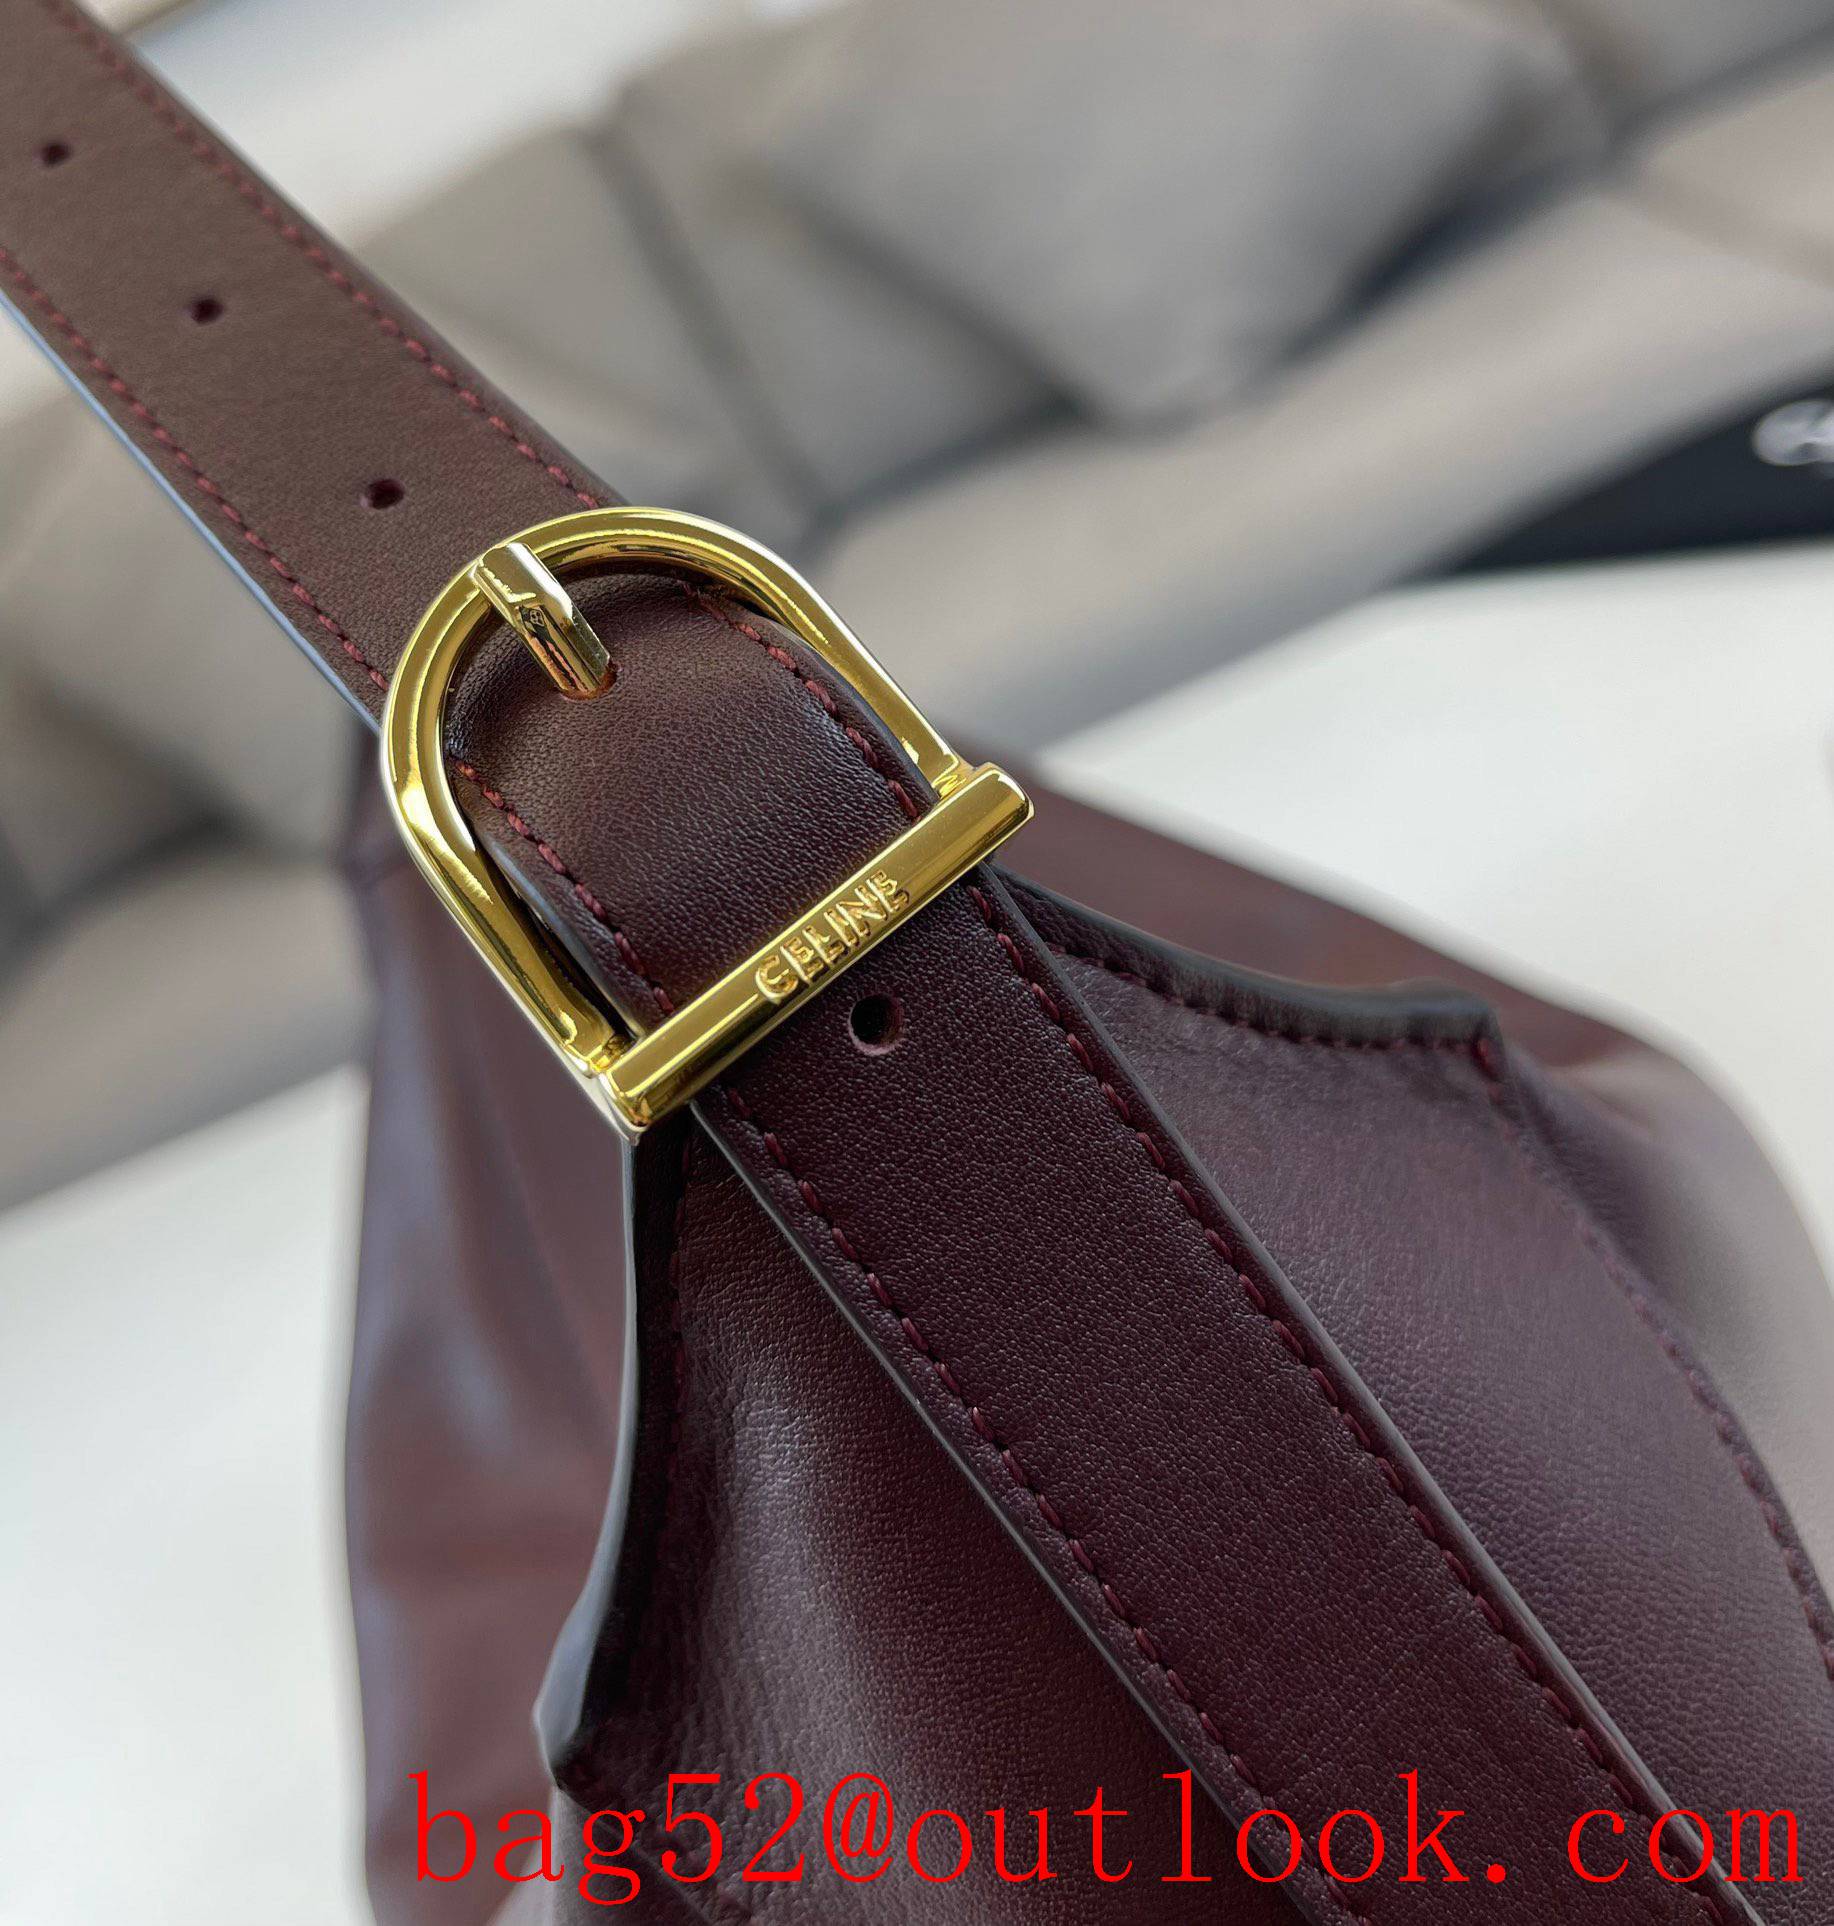 Celine romy medium soft calfskin handbag brown leather lining shoulder bag